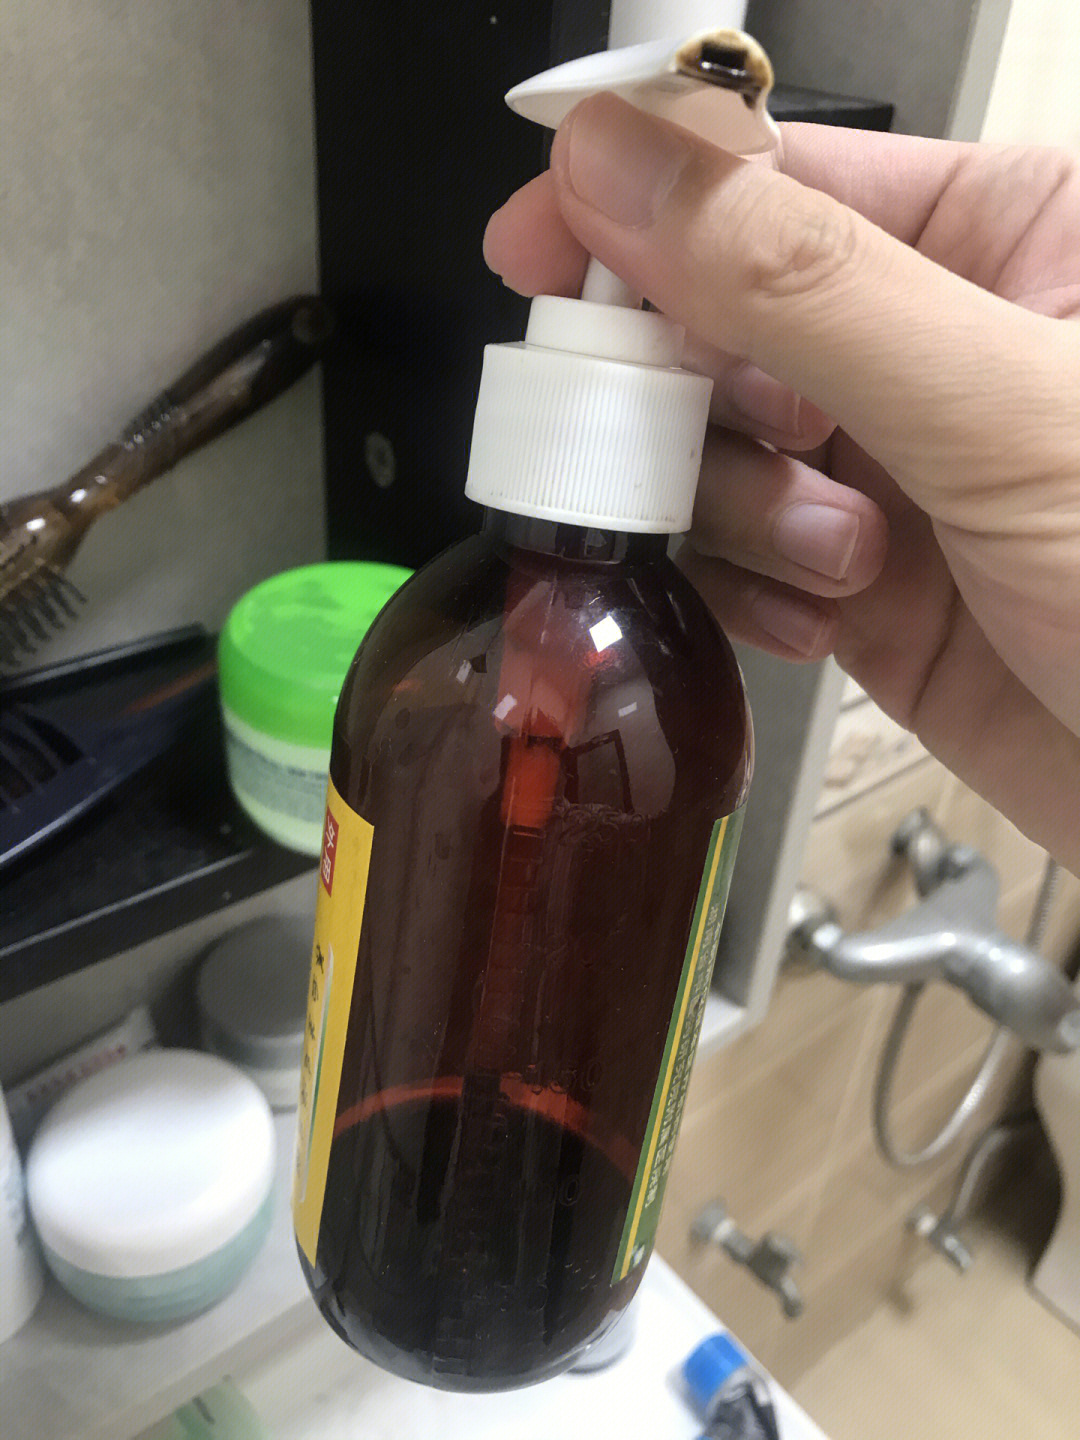 养血生发洗发精使用效果:一瓶空瓶,使用了接近3个月,额角发际线没啥